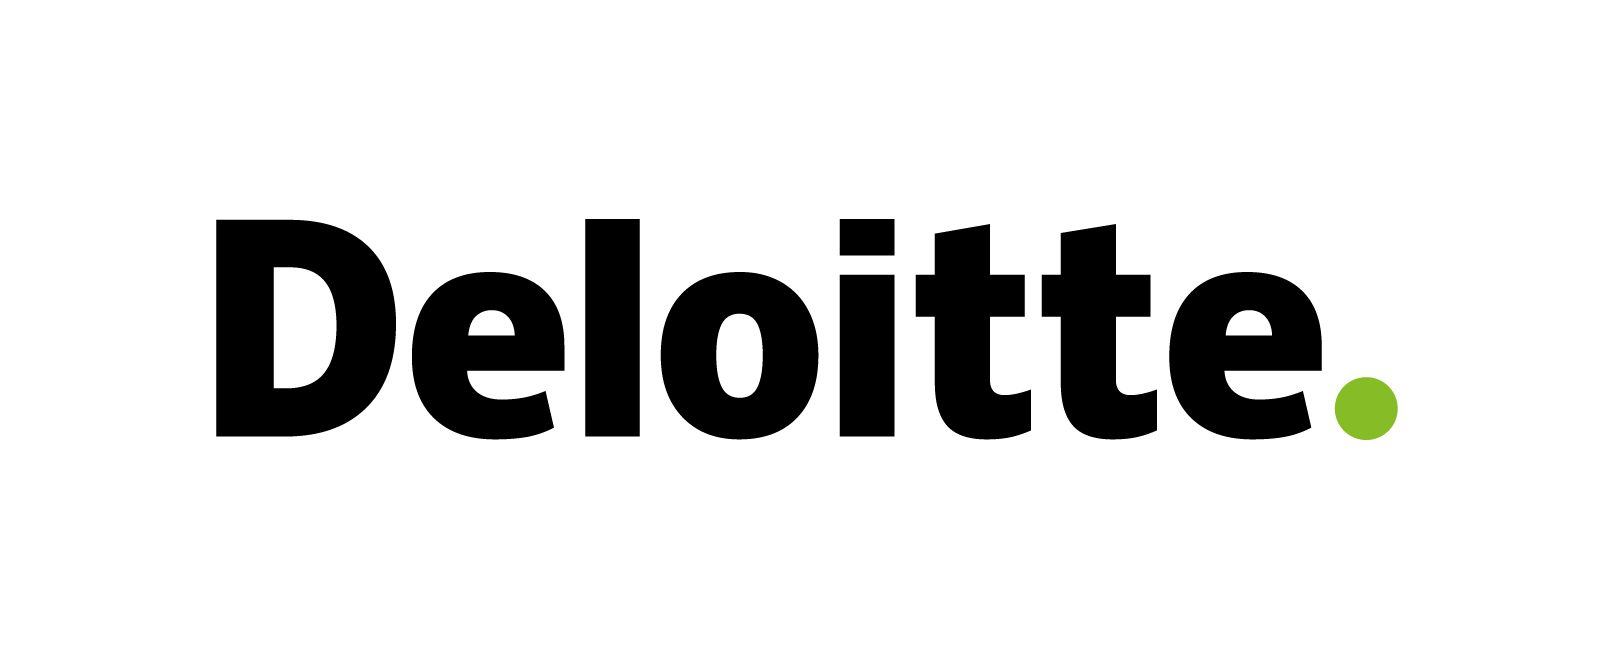 Image block - deloitte logo